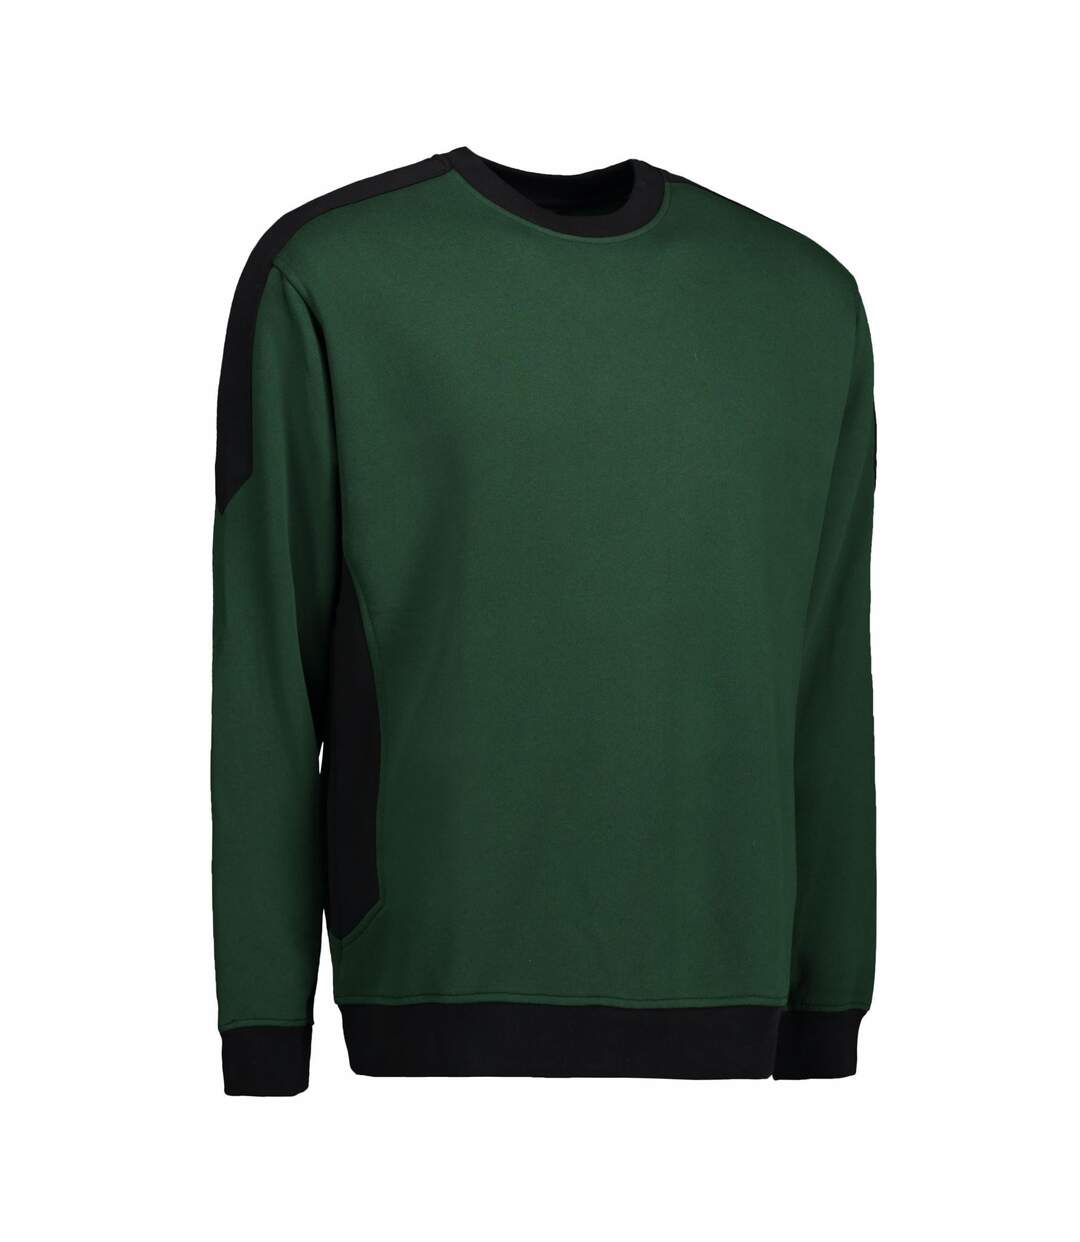 ID Mens Pro Wear Contrast Sweatshirt (Bottle green) - UTID149